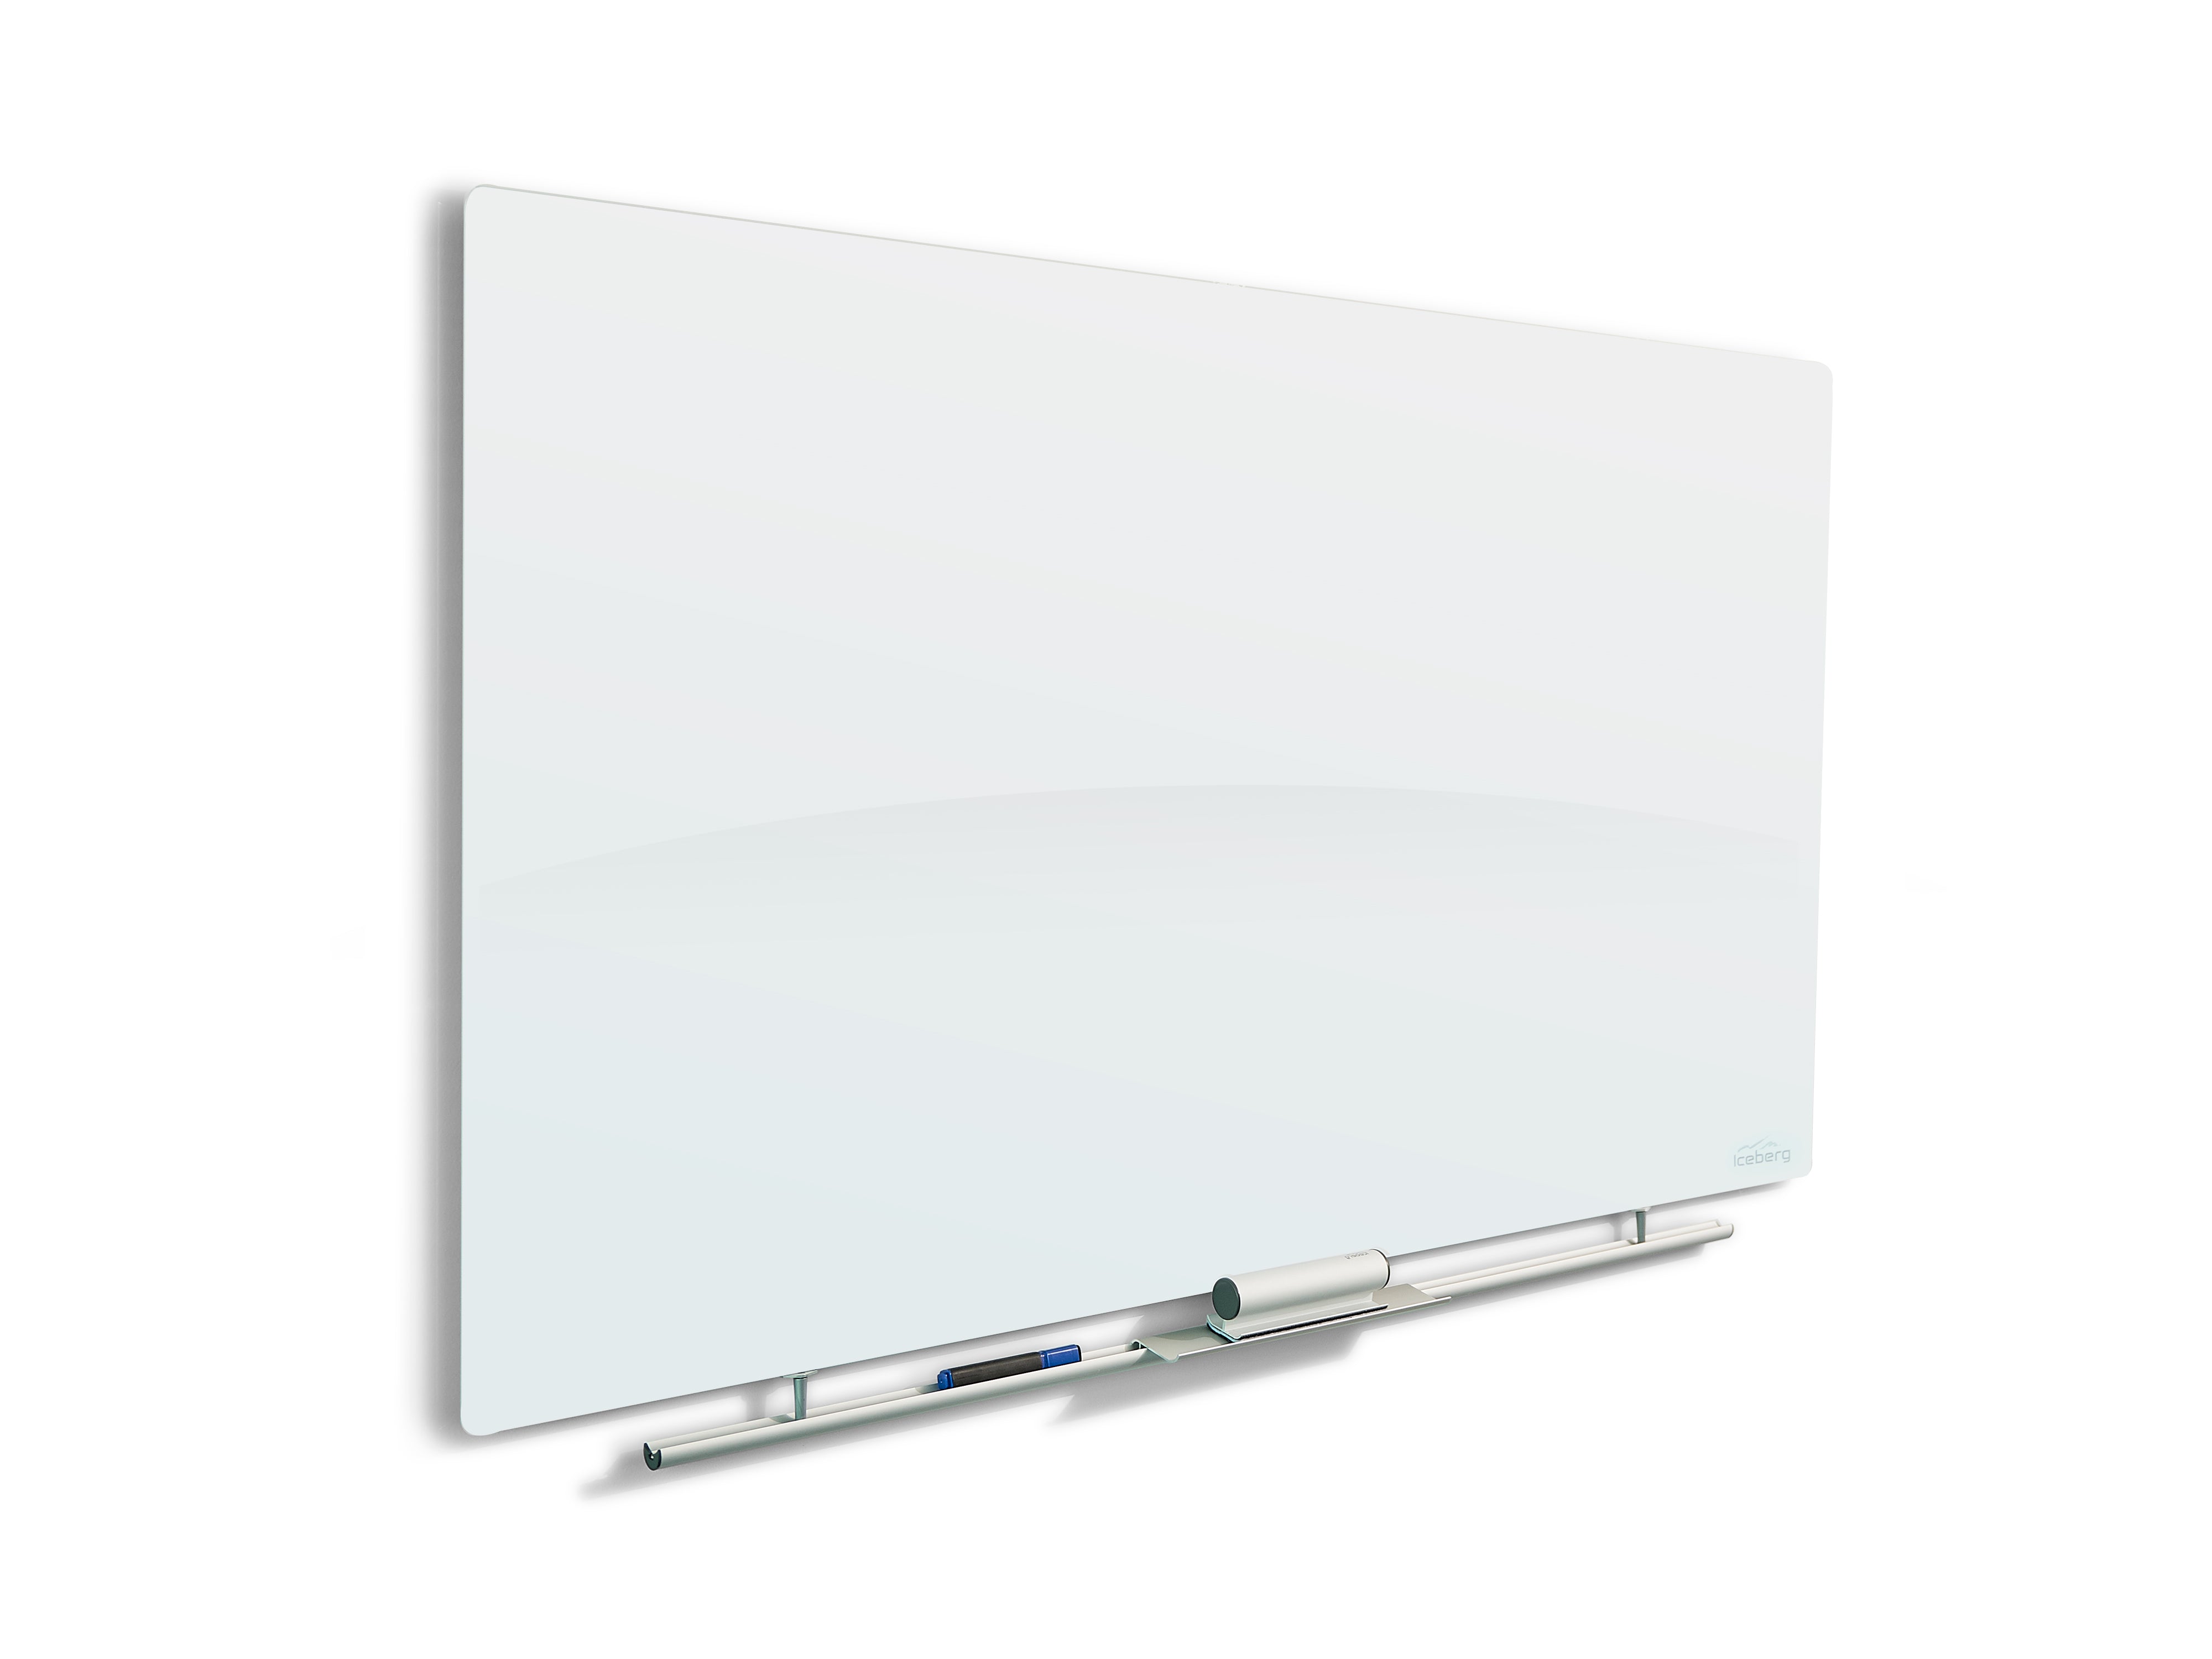 Clarity™ Glass Mobile Presentation White Board Easel – Iceberg Enterprises